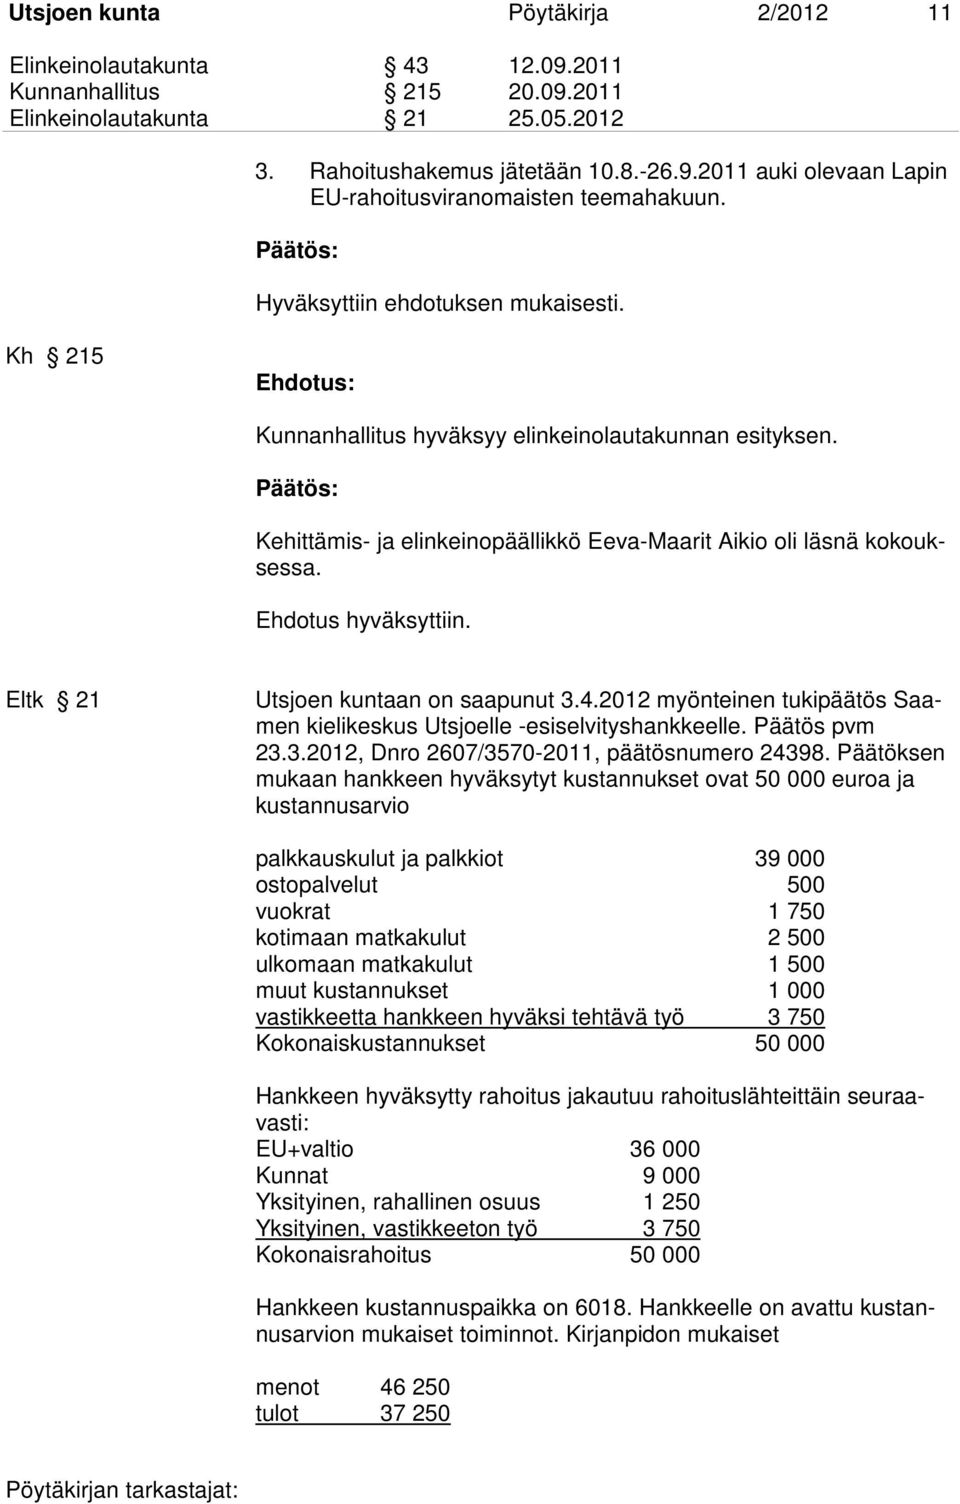 Eltk 21 Utsjoen kuntaan on saapunut 3.4.2012 myönteinen tukipäätös Saamen kielikeskus Utsjoelle -esiselvityshankkeelle. Päätös pvm 23.3.2012, Dnro 2607/3570-2011, päätösnumero 24398.